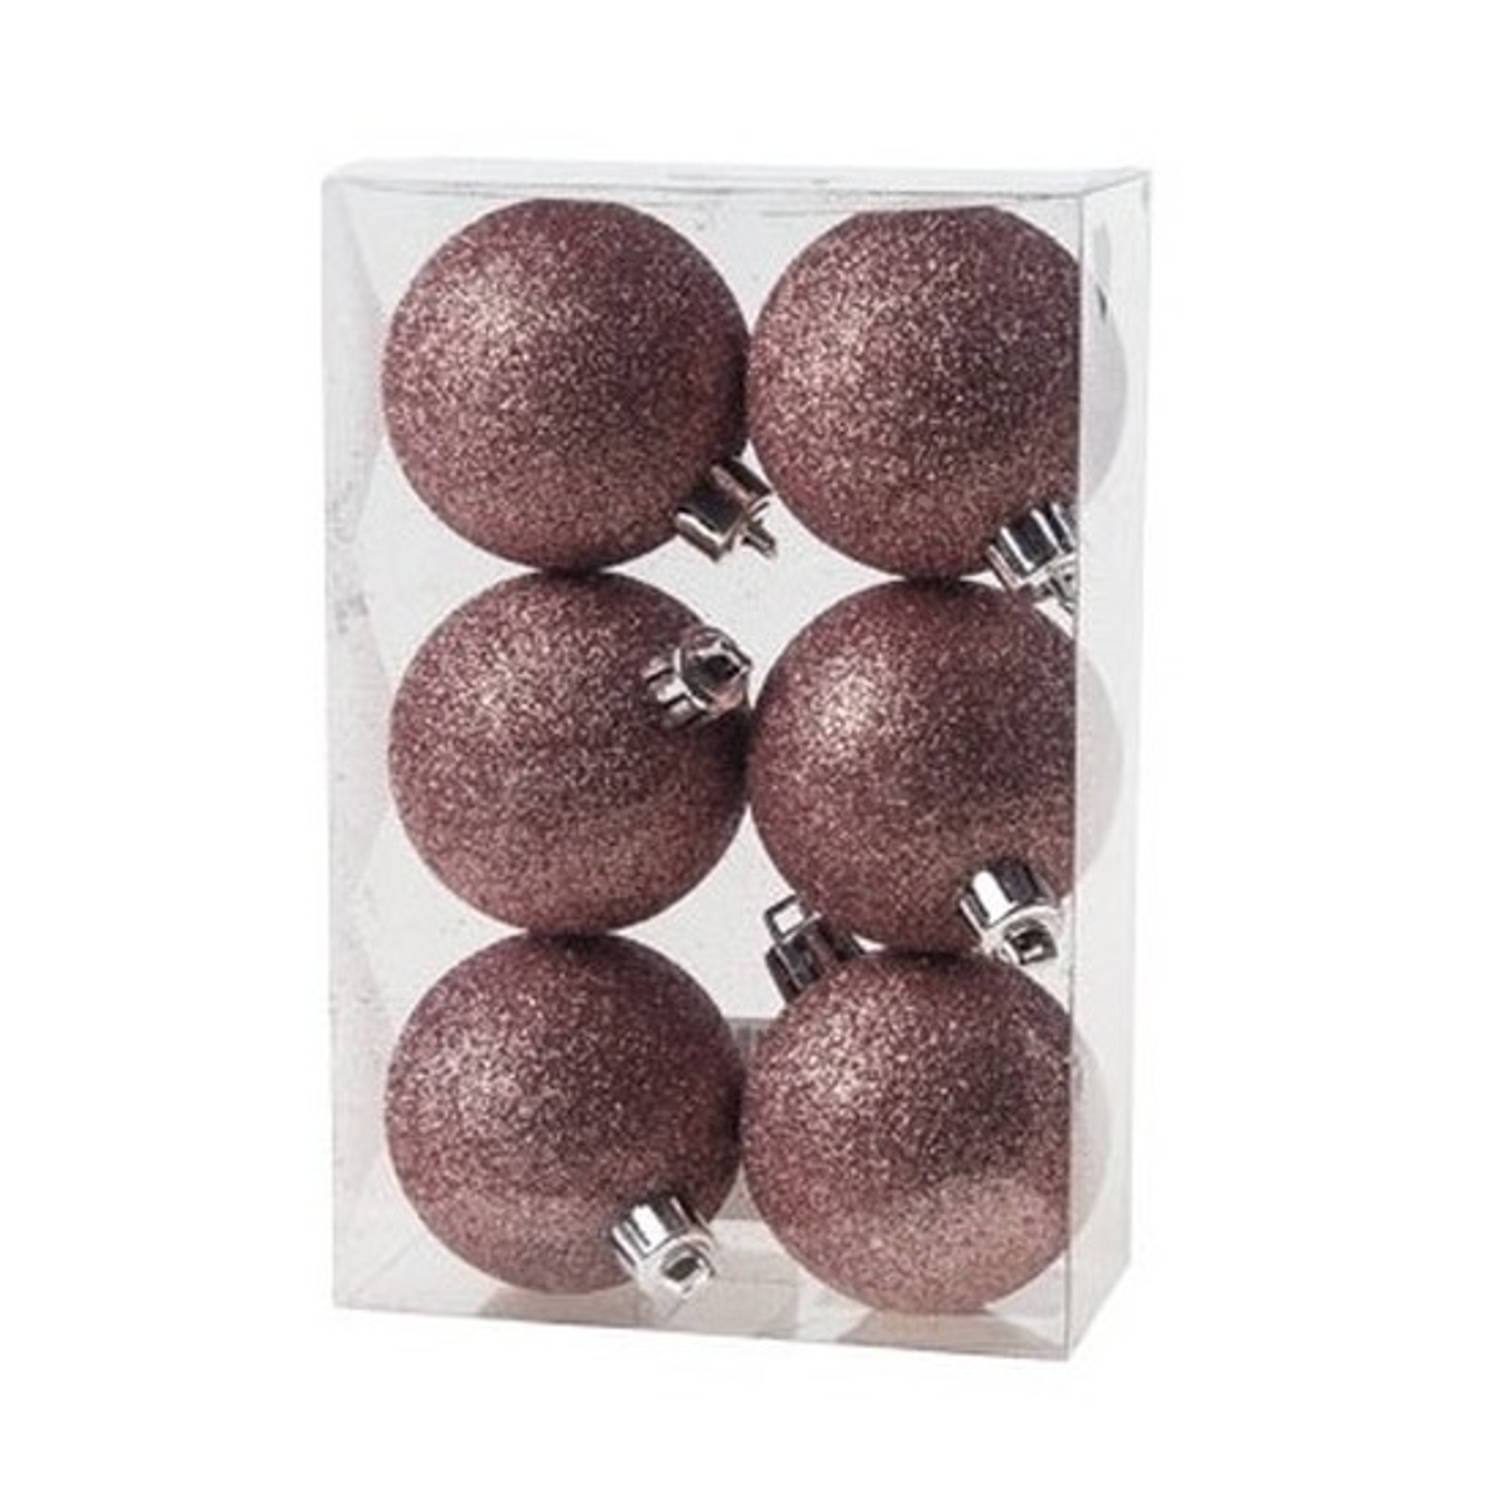 6x Kunststof kerstballen glitter roze 6 cm kerstboom versiering/decoratie - Kerstbal